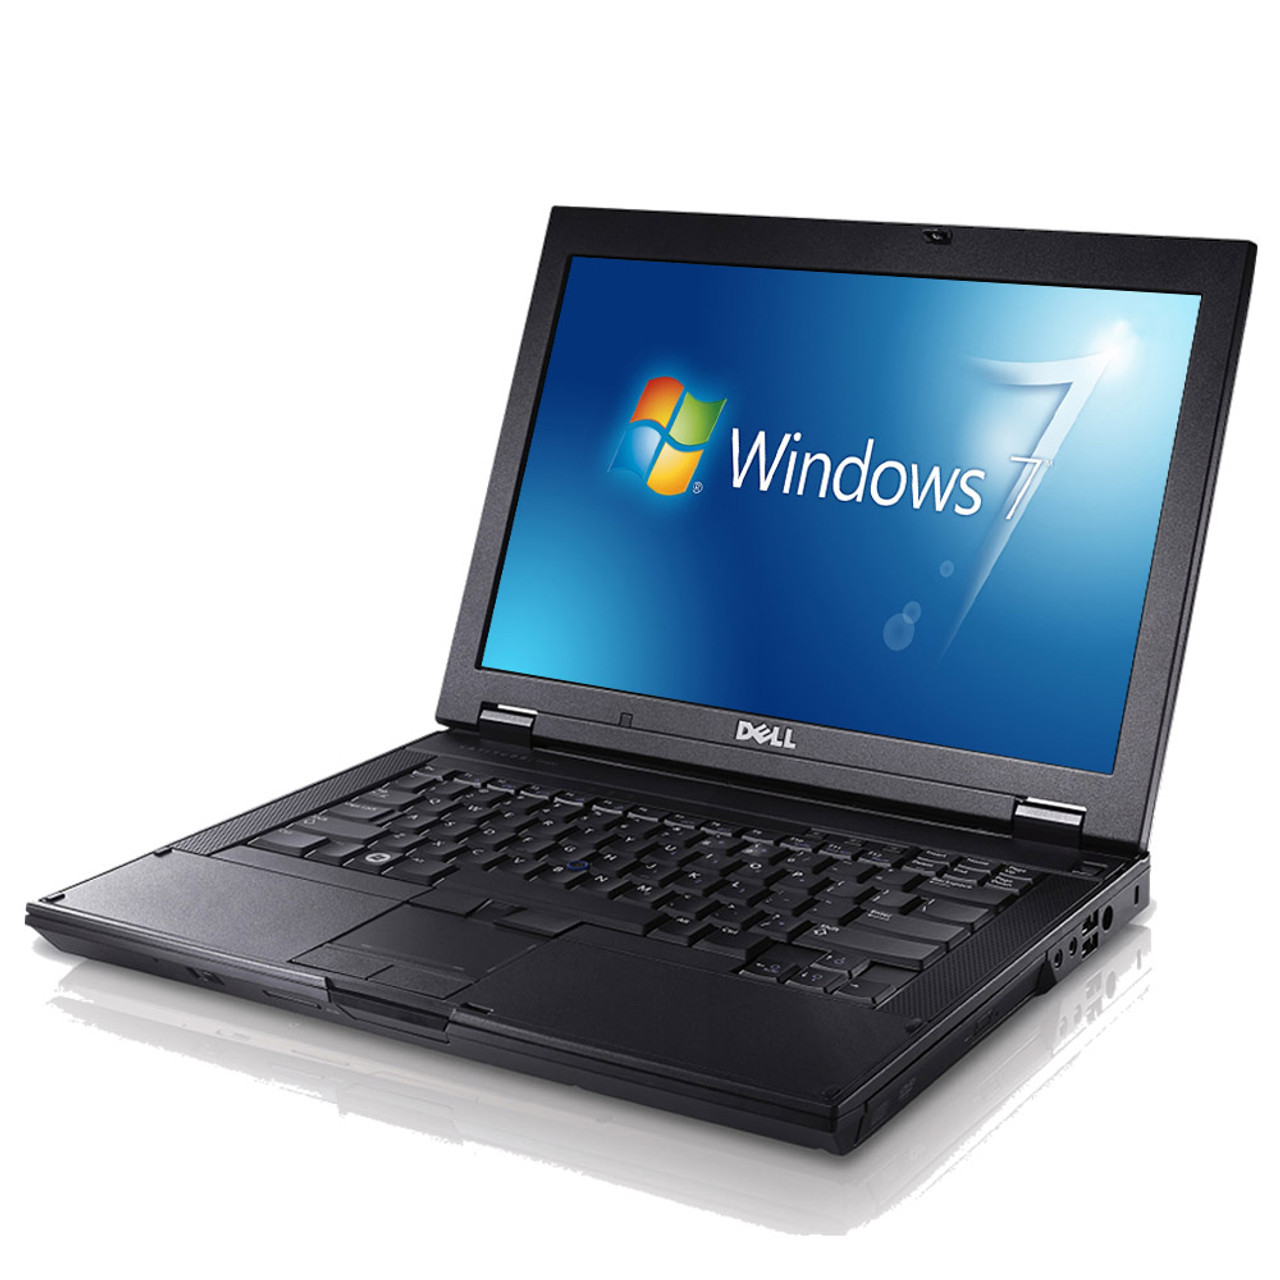 Dell Latitude E6410 Laptop 7 Pro 64bit Core i5 2.4 GHz 4GB SSD DVD-RW